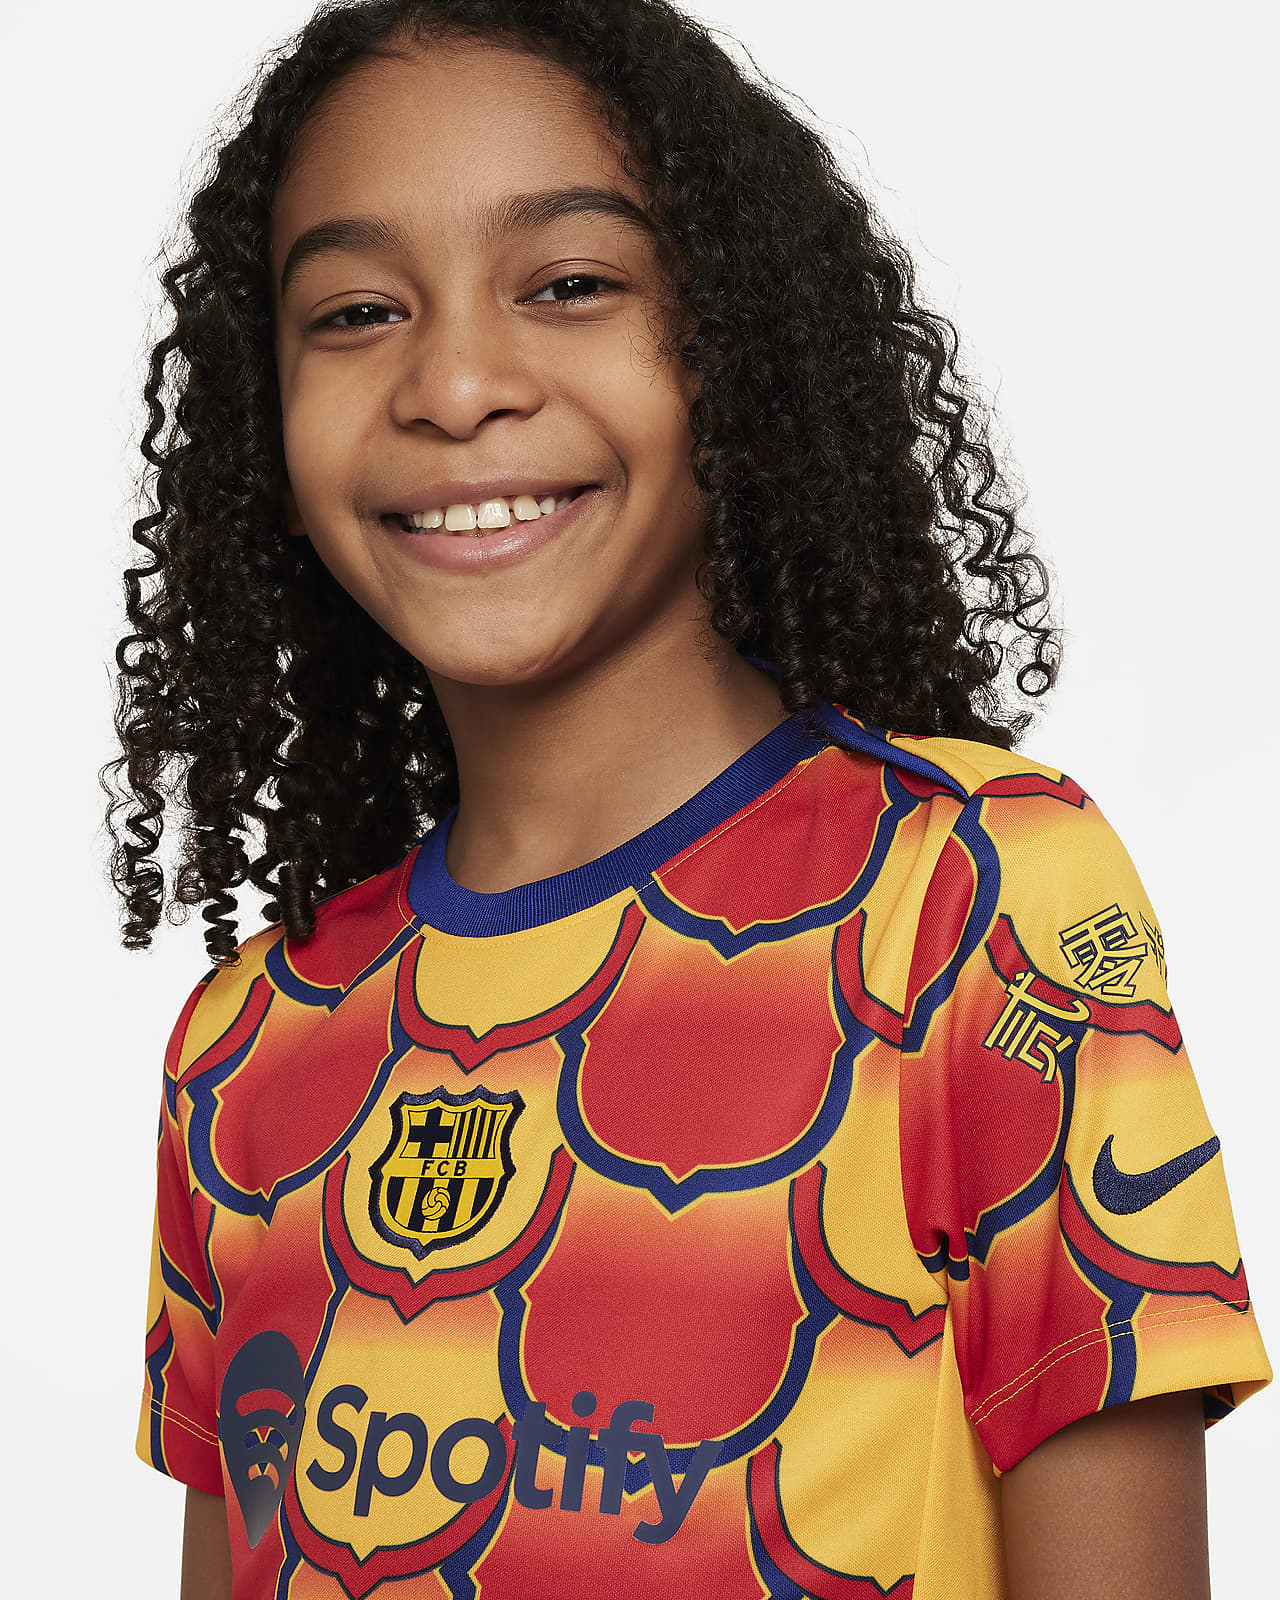 NIKE Camiseta De Fútbol Fc Barcelona Niño Nike